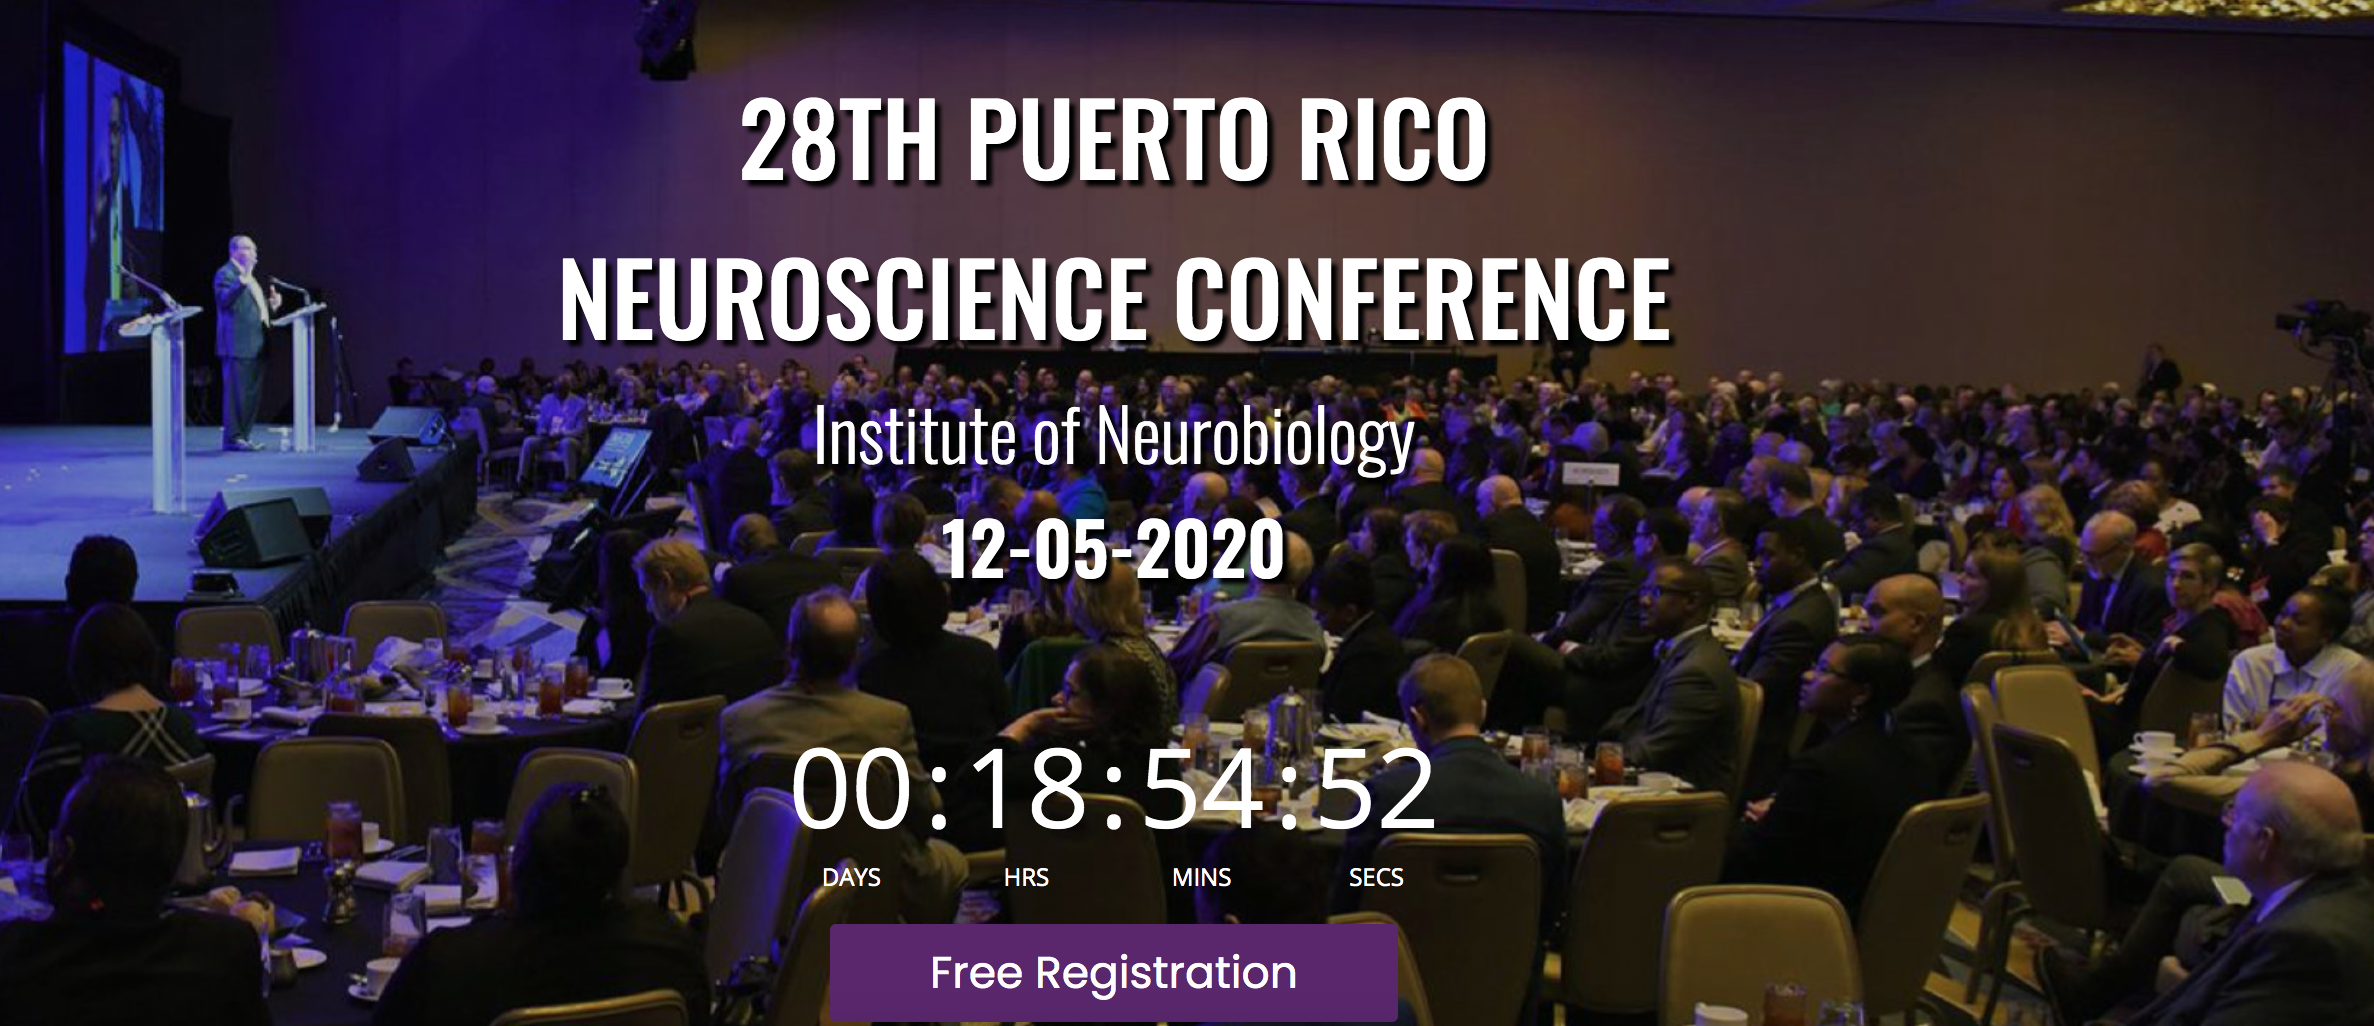 Rompe récords de registro la conferencia virtual de Neurociencia que se celebrará en Puerto Rico